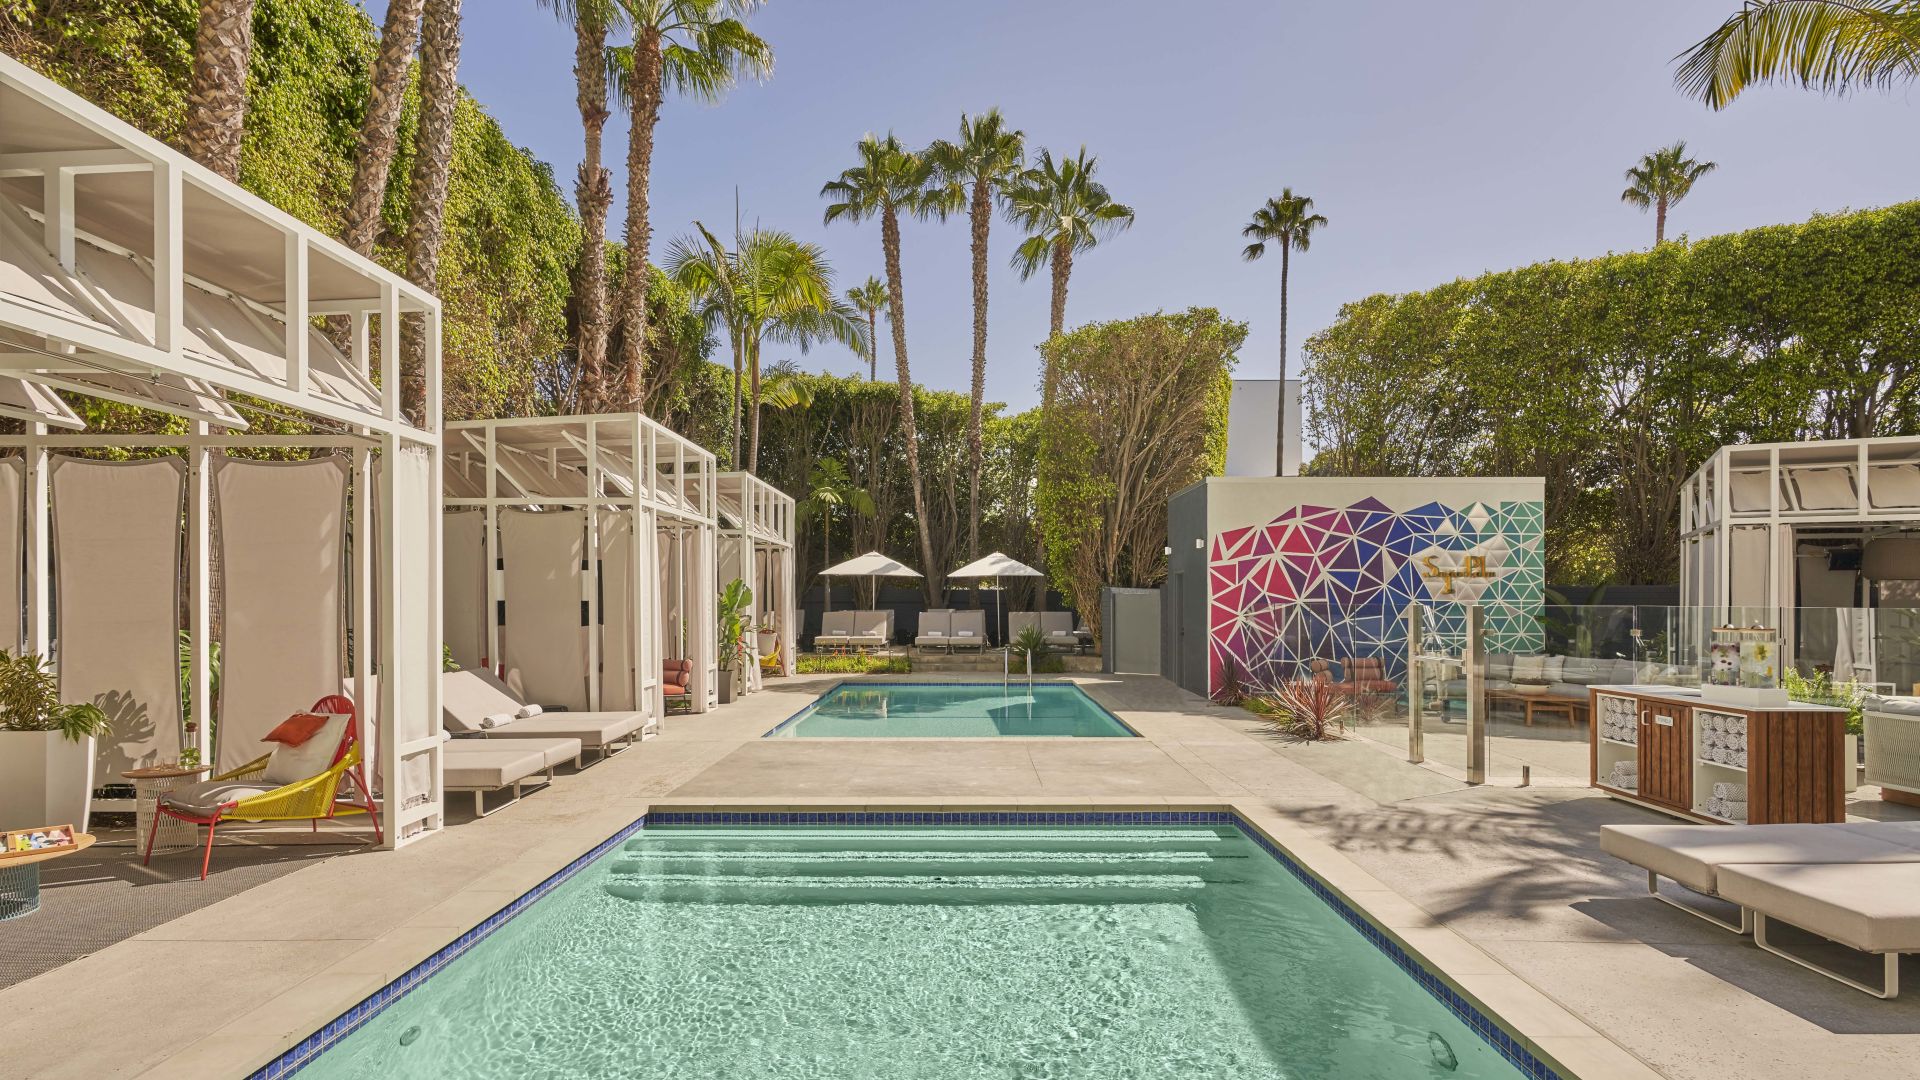 The pools and cabanas at Viceroy Santa Monica